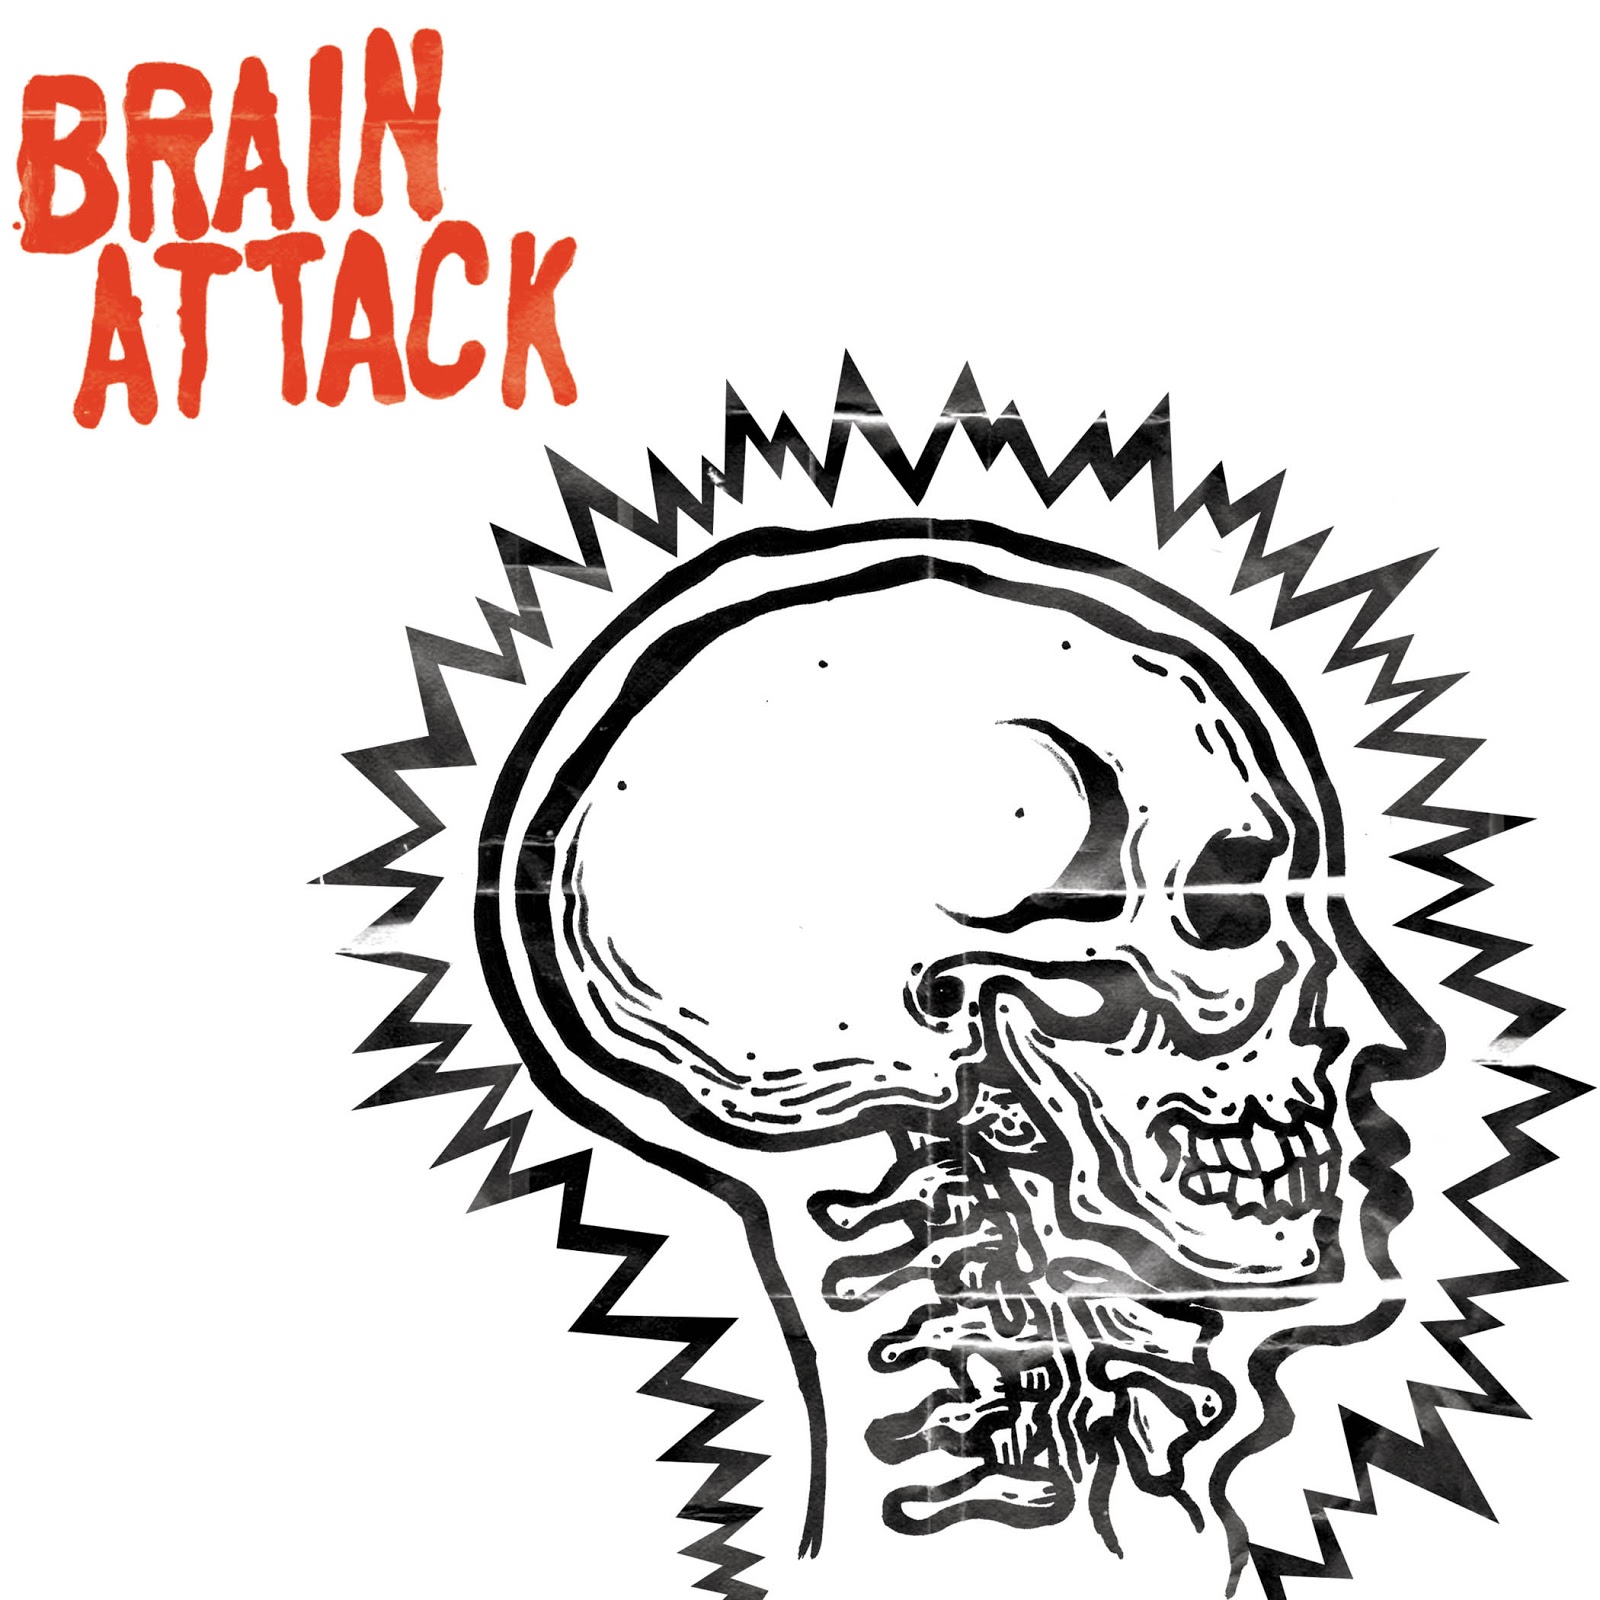 Brain attack